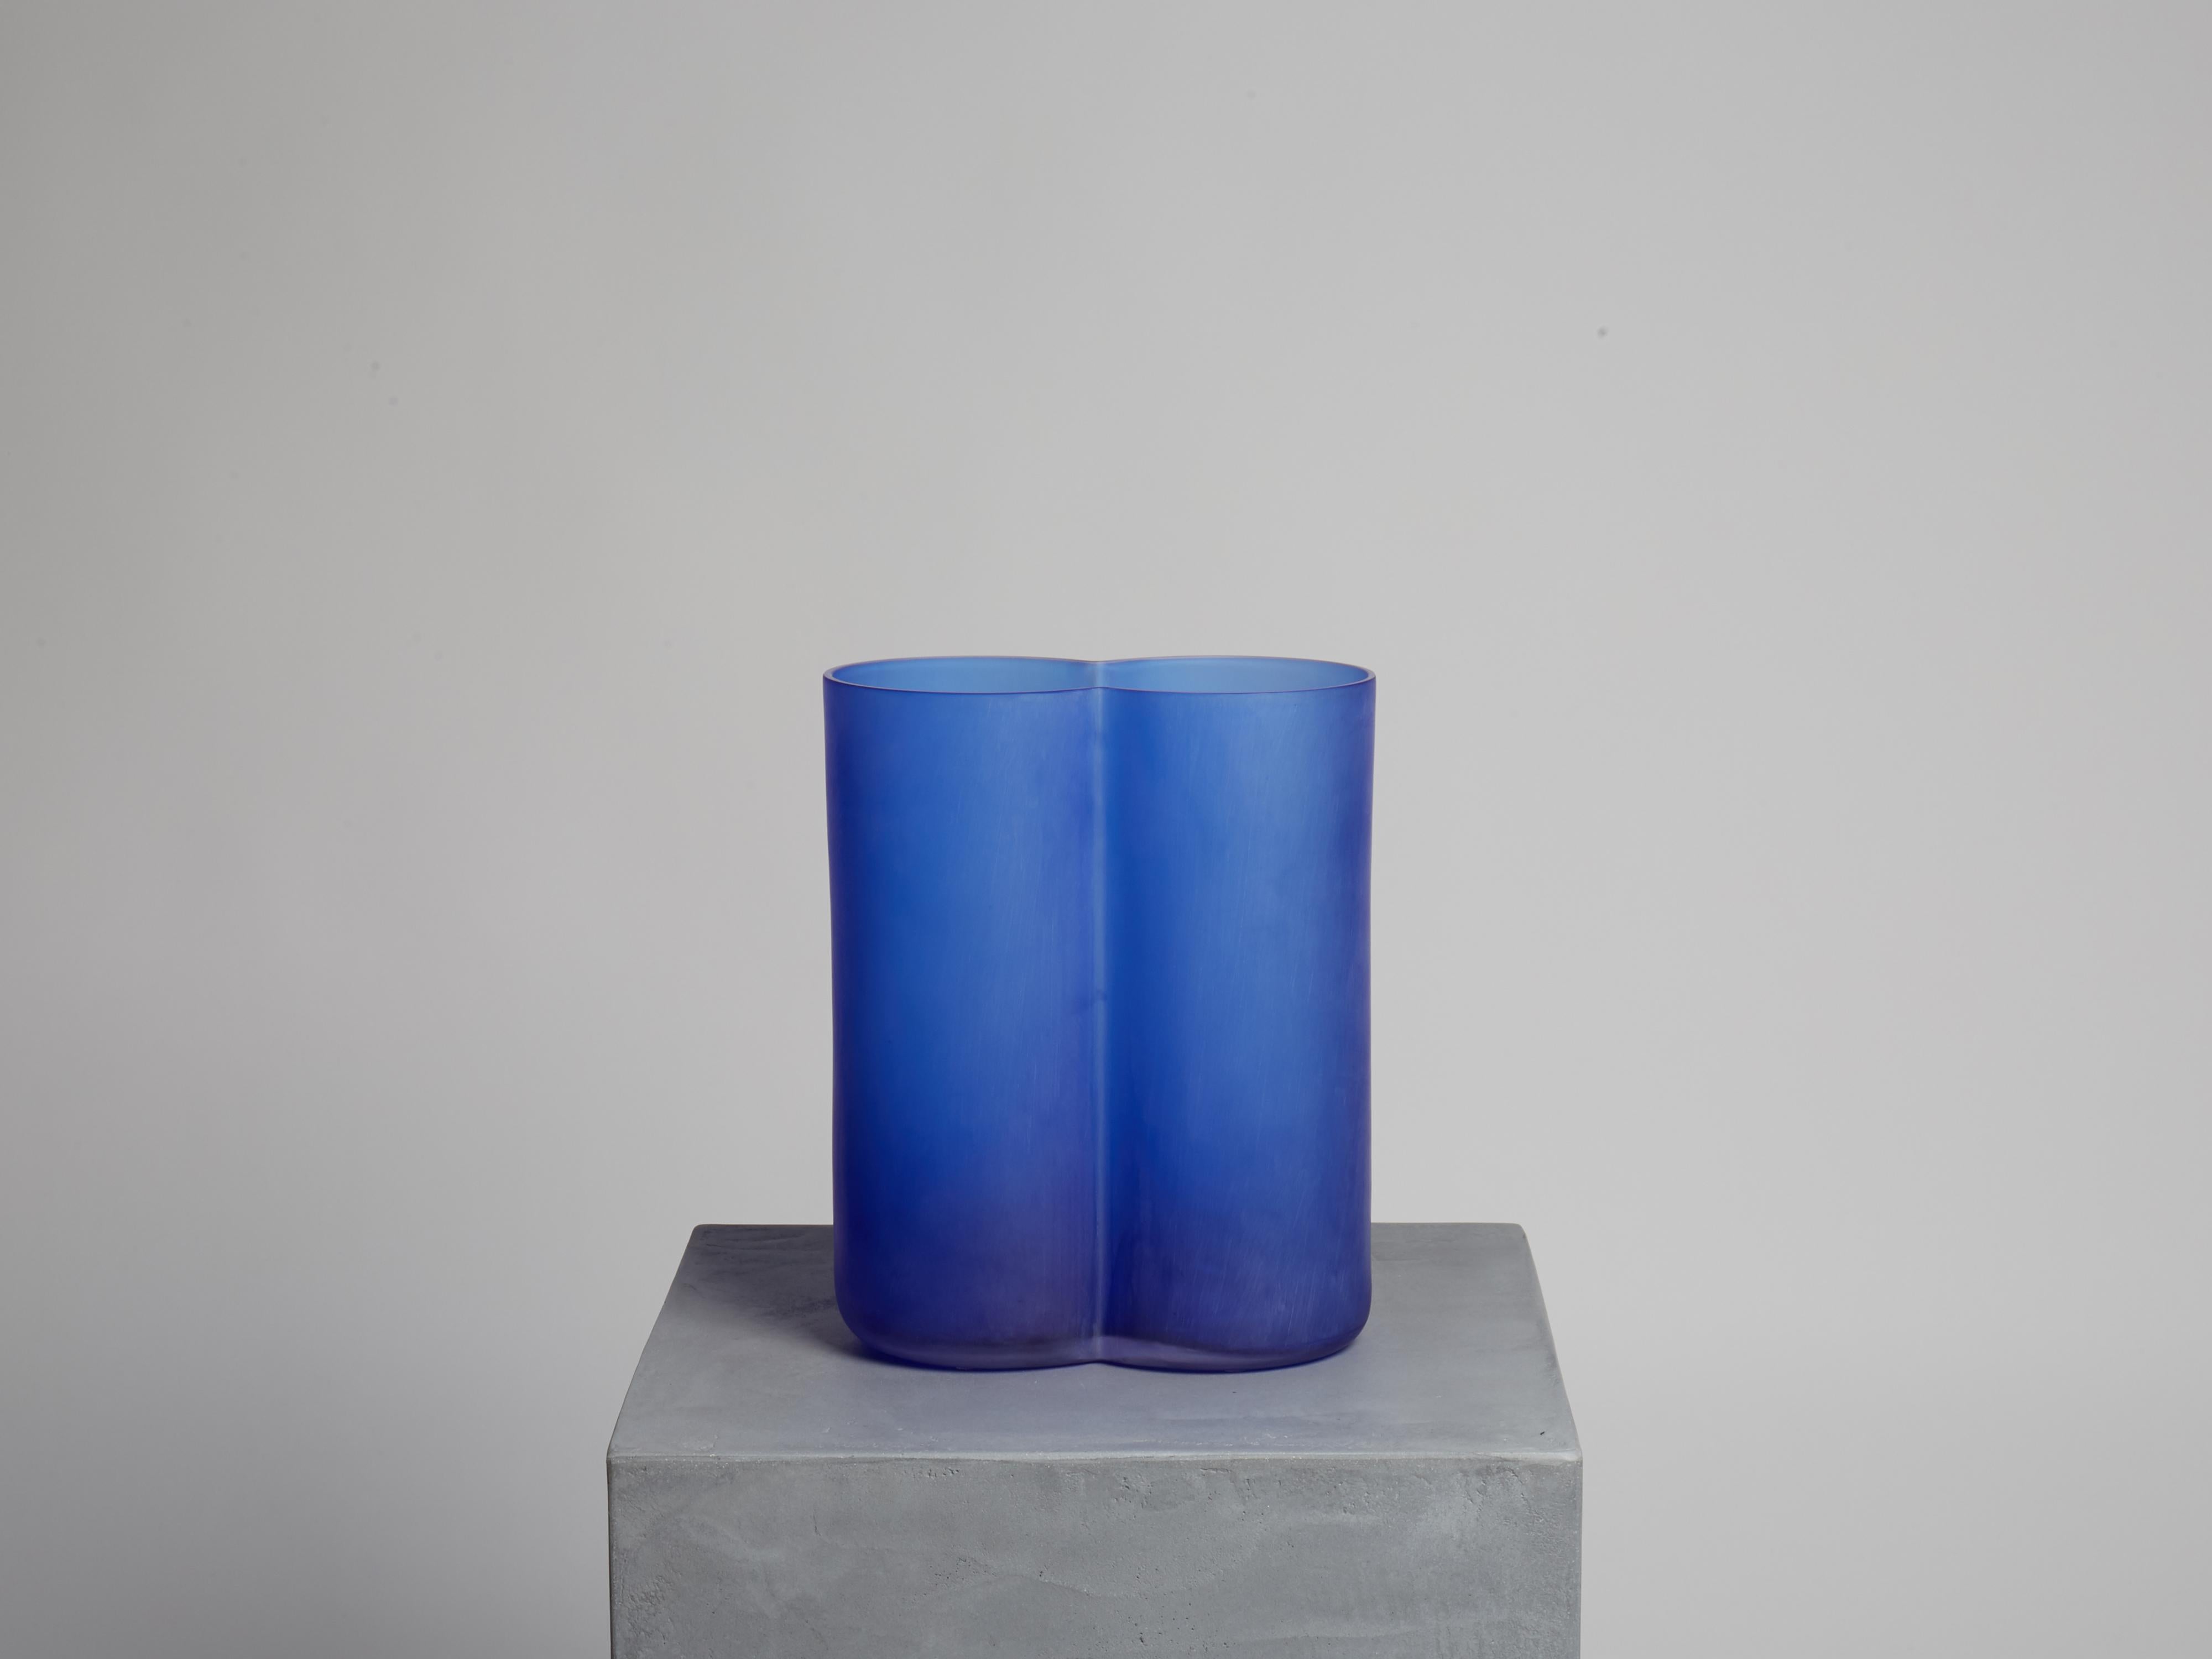 MATERIAL : verre de Murano, finition satinée

Couleurs : bleu cobalt ; également disponible en vert émeraude ou en jaune ocre

En janvier 2017, Calori & Maillard a participé à Art City, un événement lié à Arte Fiera, avec l'exposition personnelle